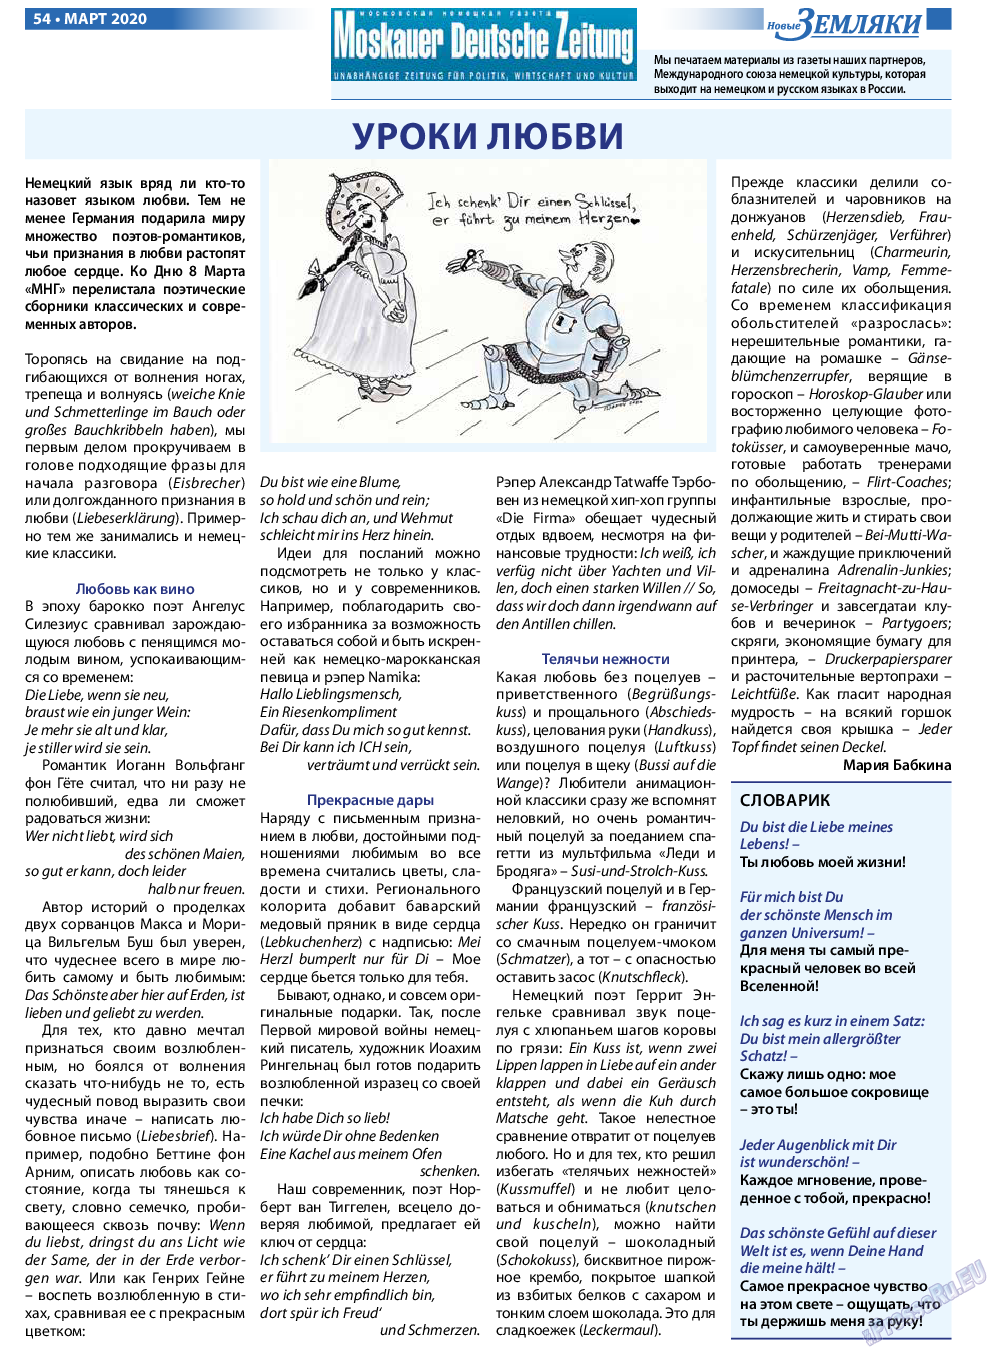 Новые Земляки, газета. 2020 №3 стр.54